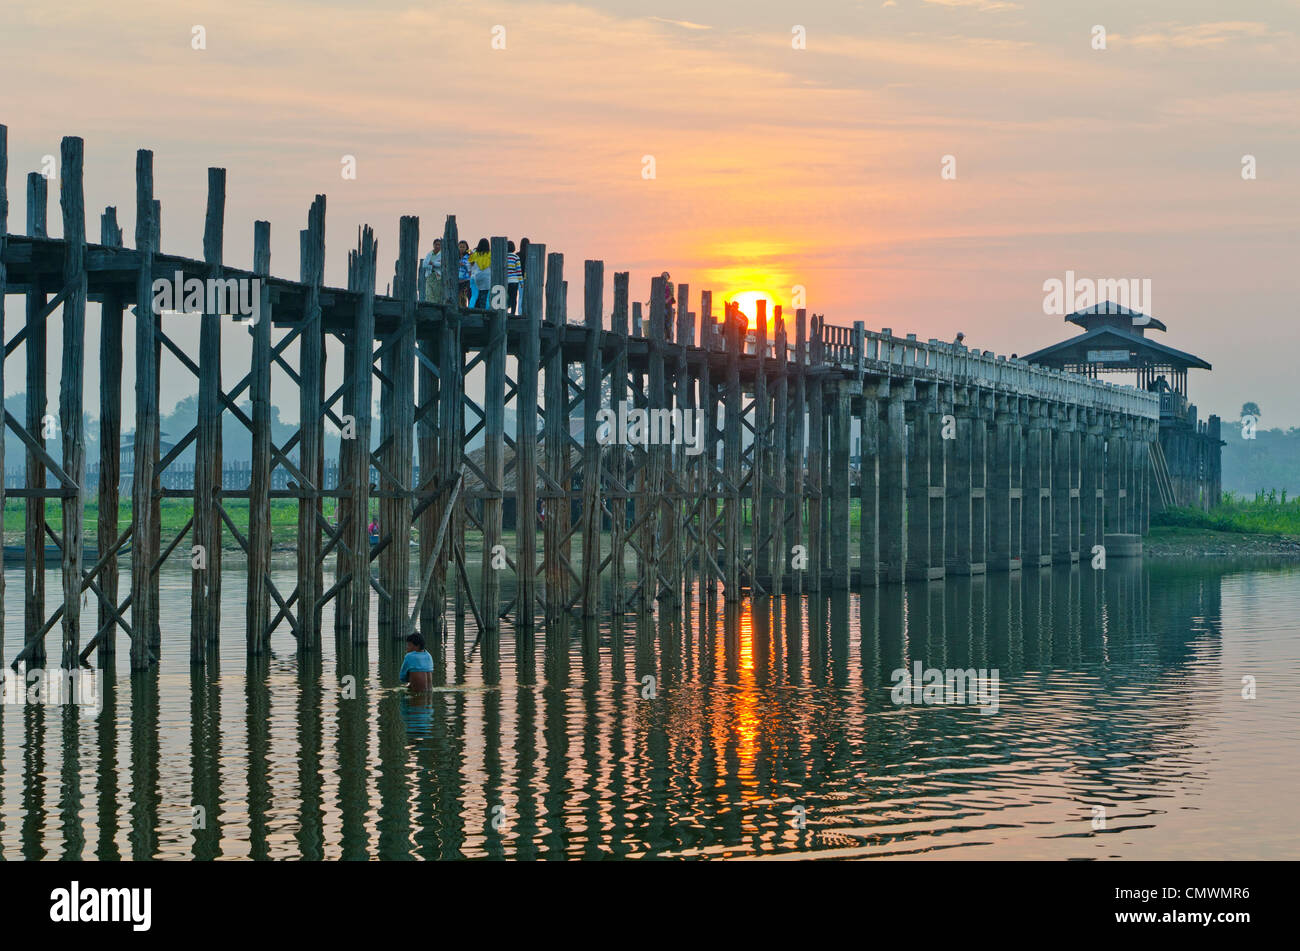 U Bein ponte in teak a sunrise, Mandalay Myanmar Foto Stock